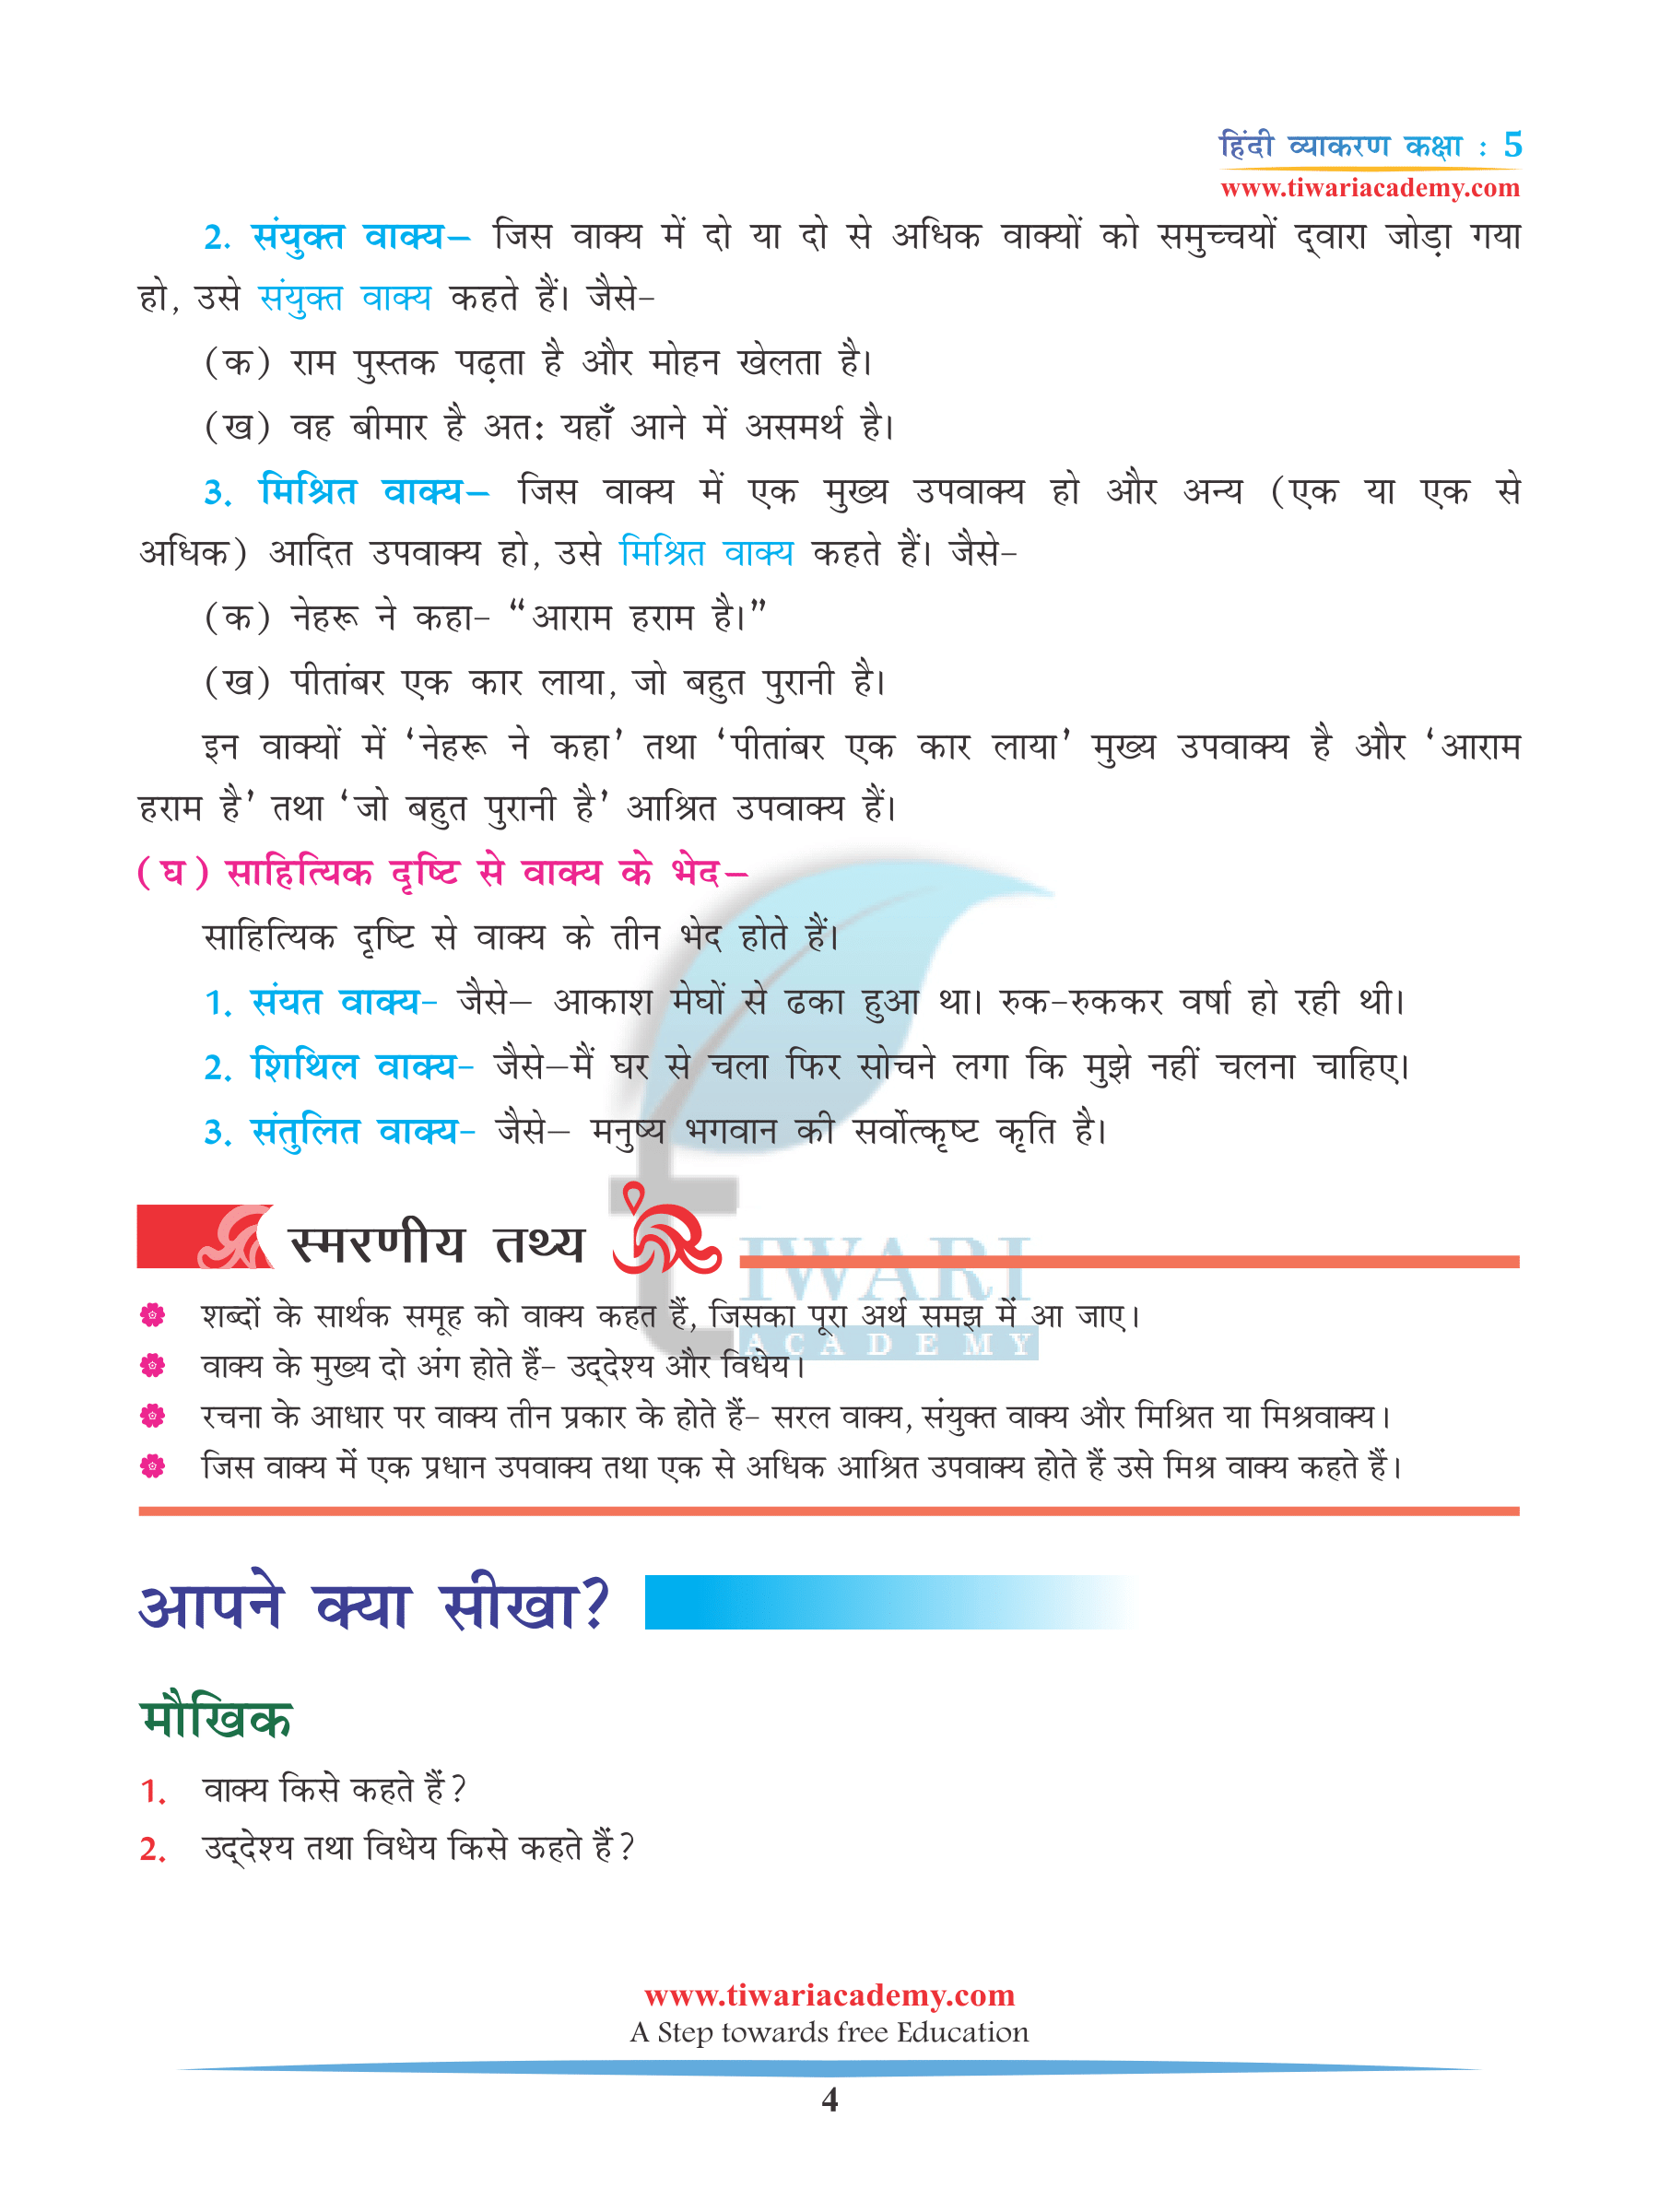 Class 5 Hindi Grammar Chapter 11 Assignments